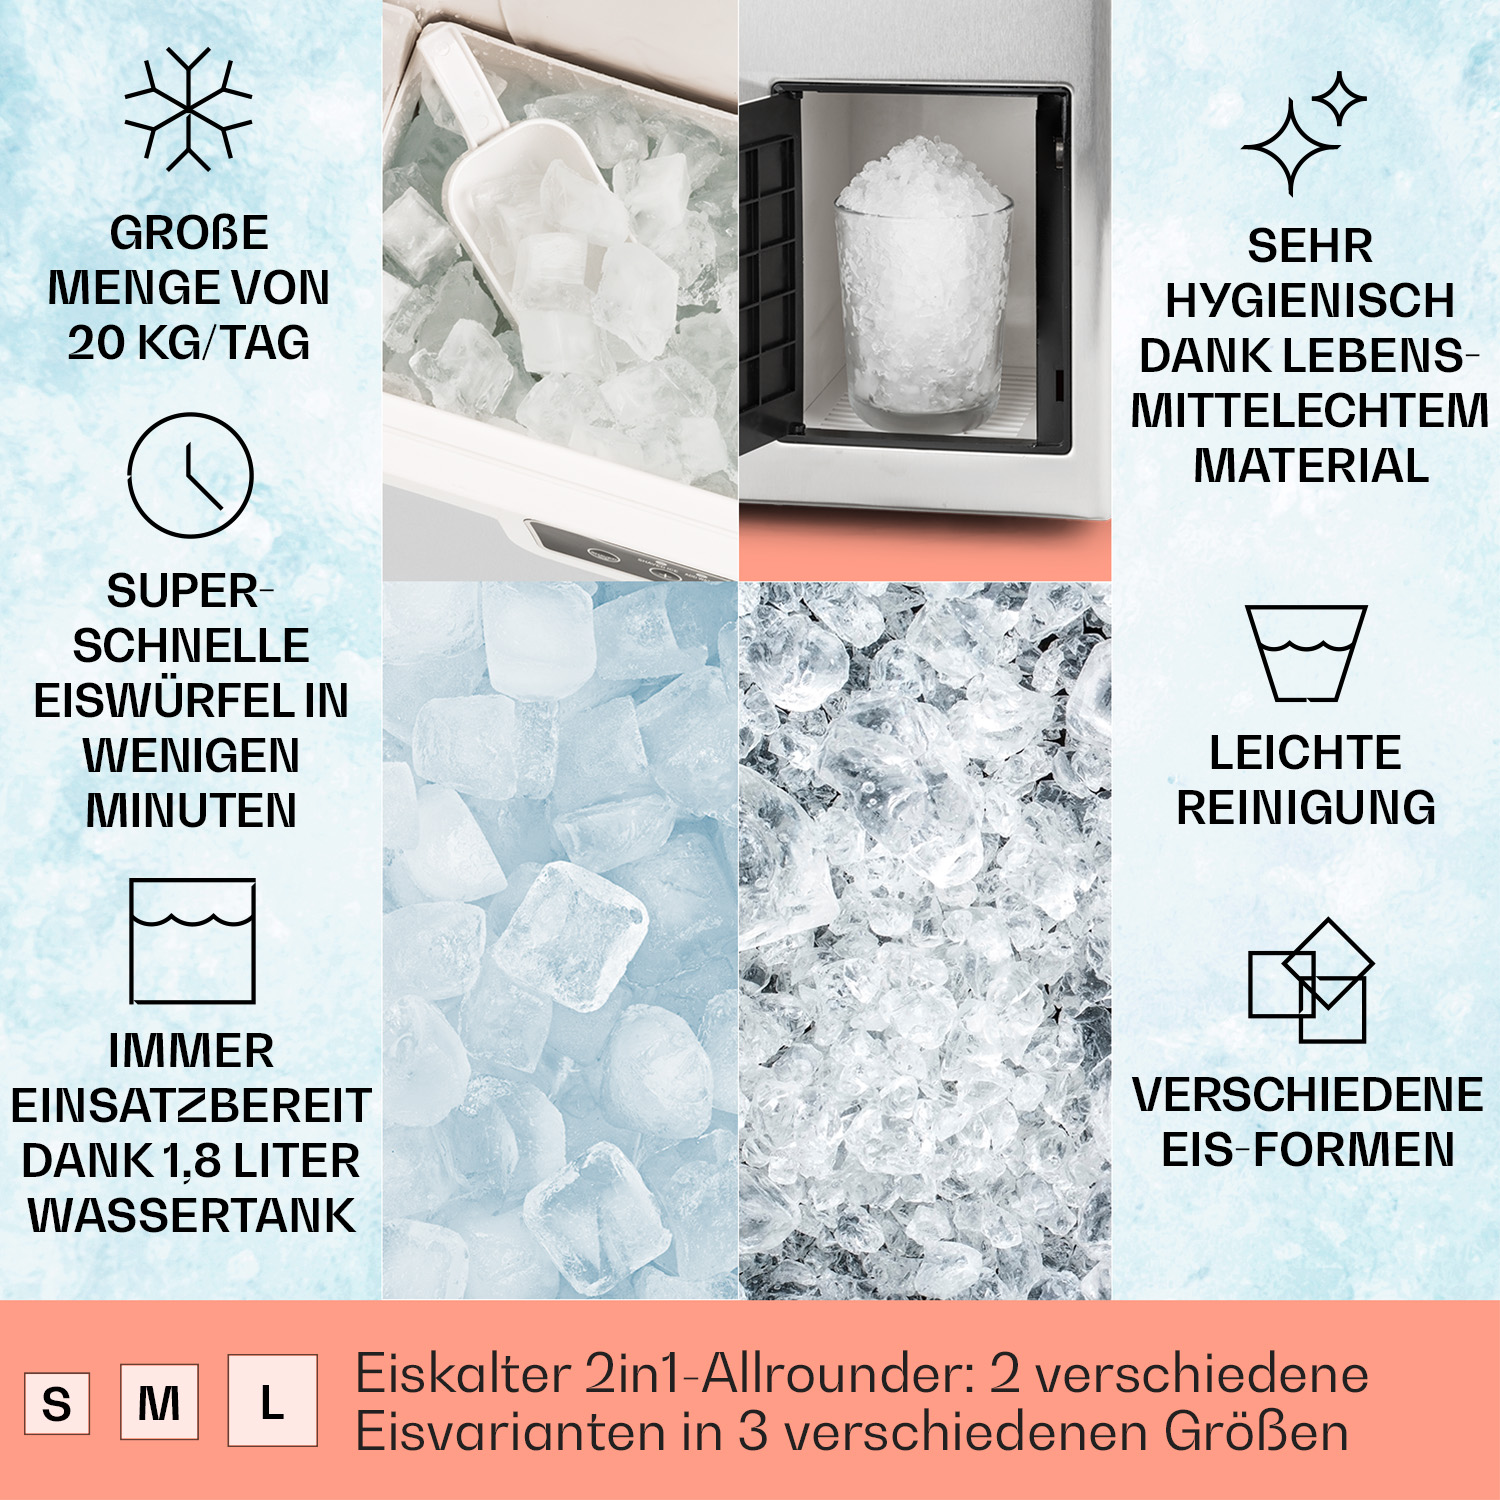 KLARSTEIN Icefestival Cube Eiswürfelmaschine (195 Silber) Watt